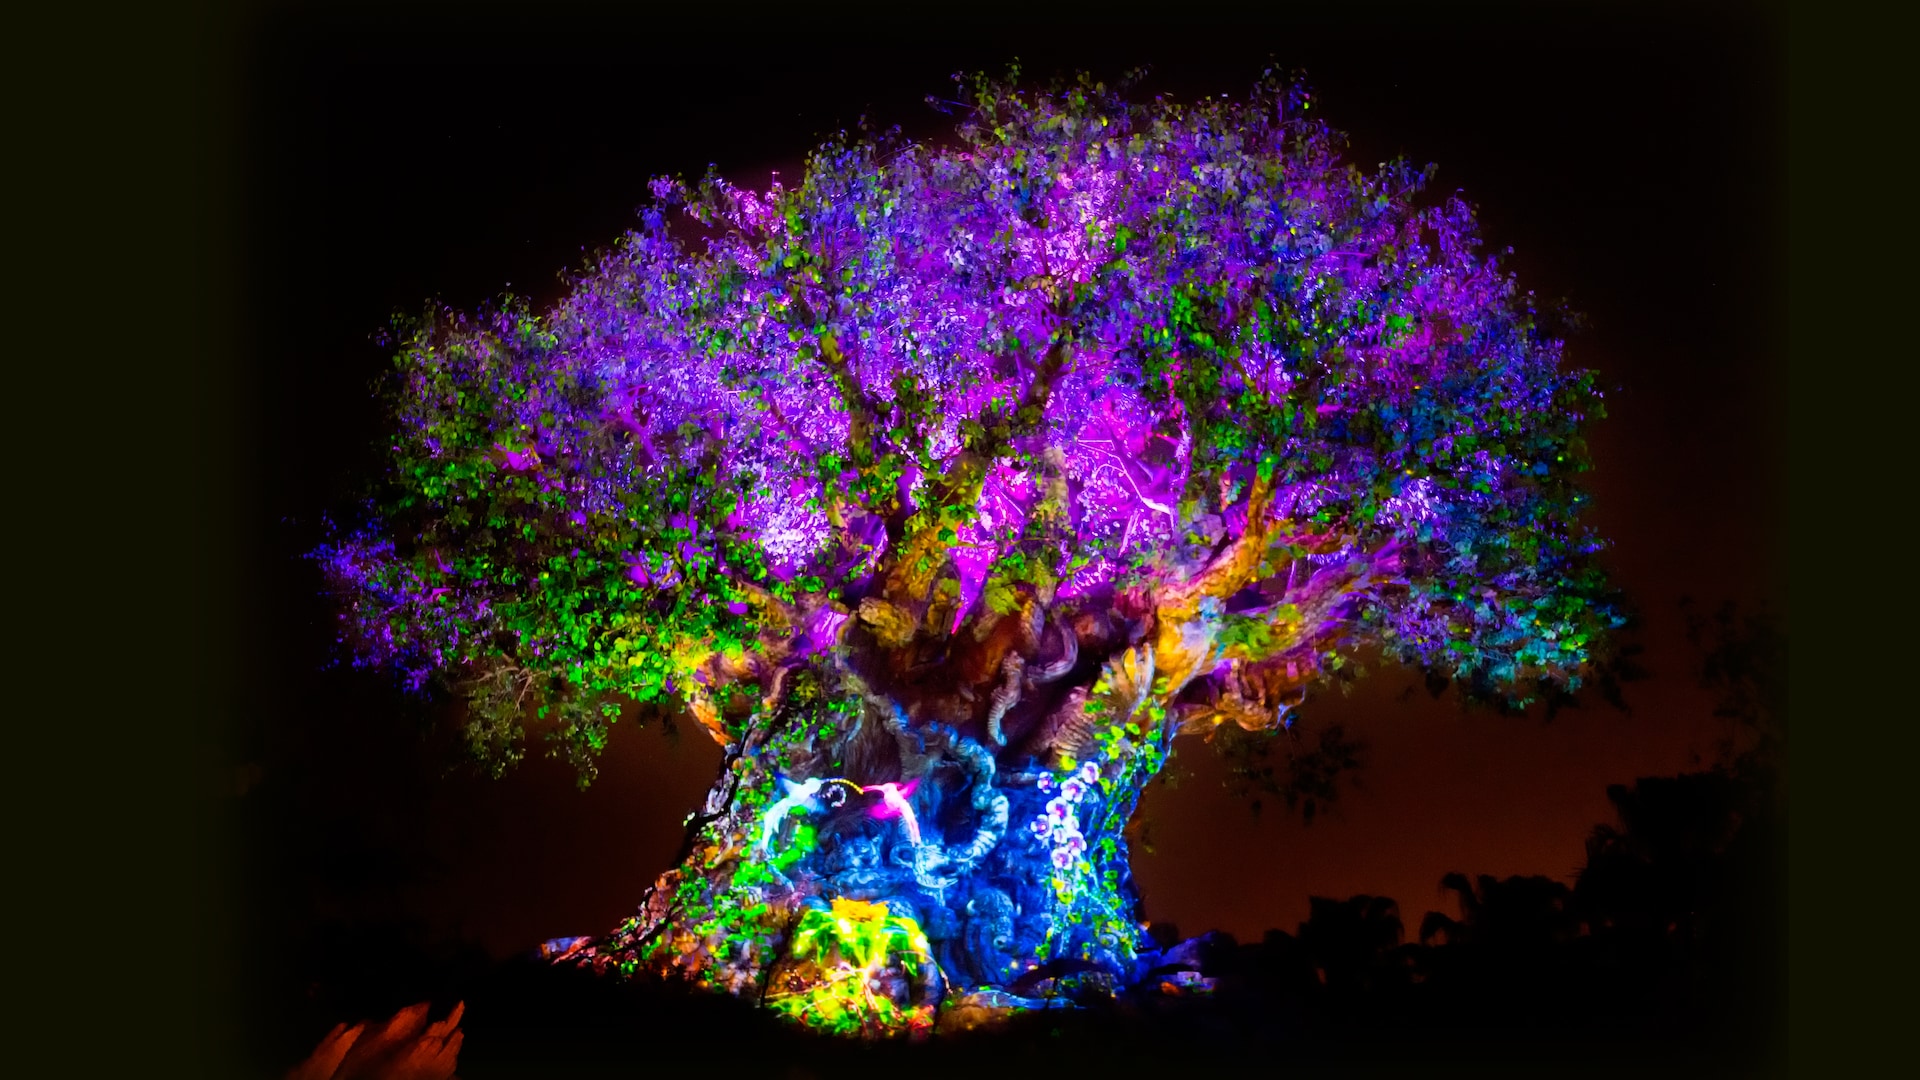 Tree of Life animal kingdom